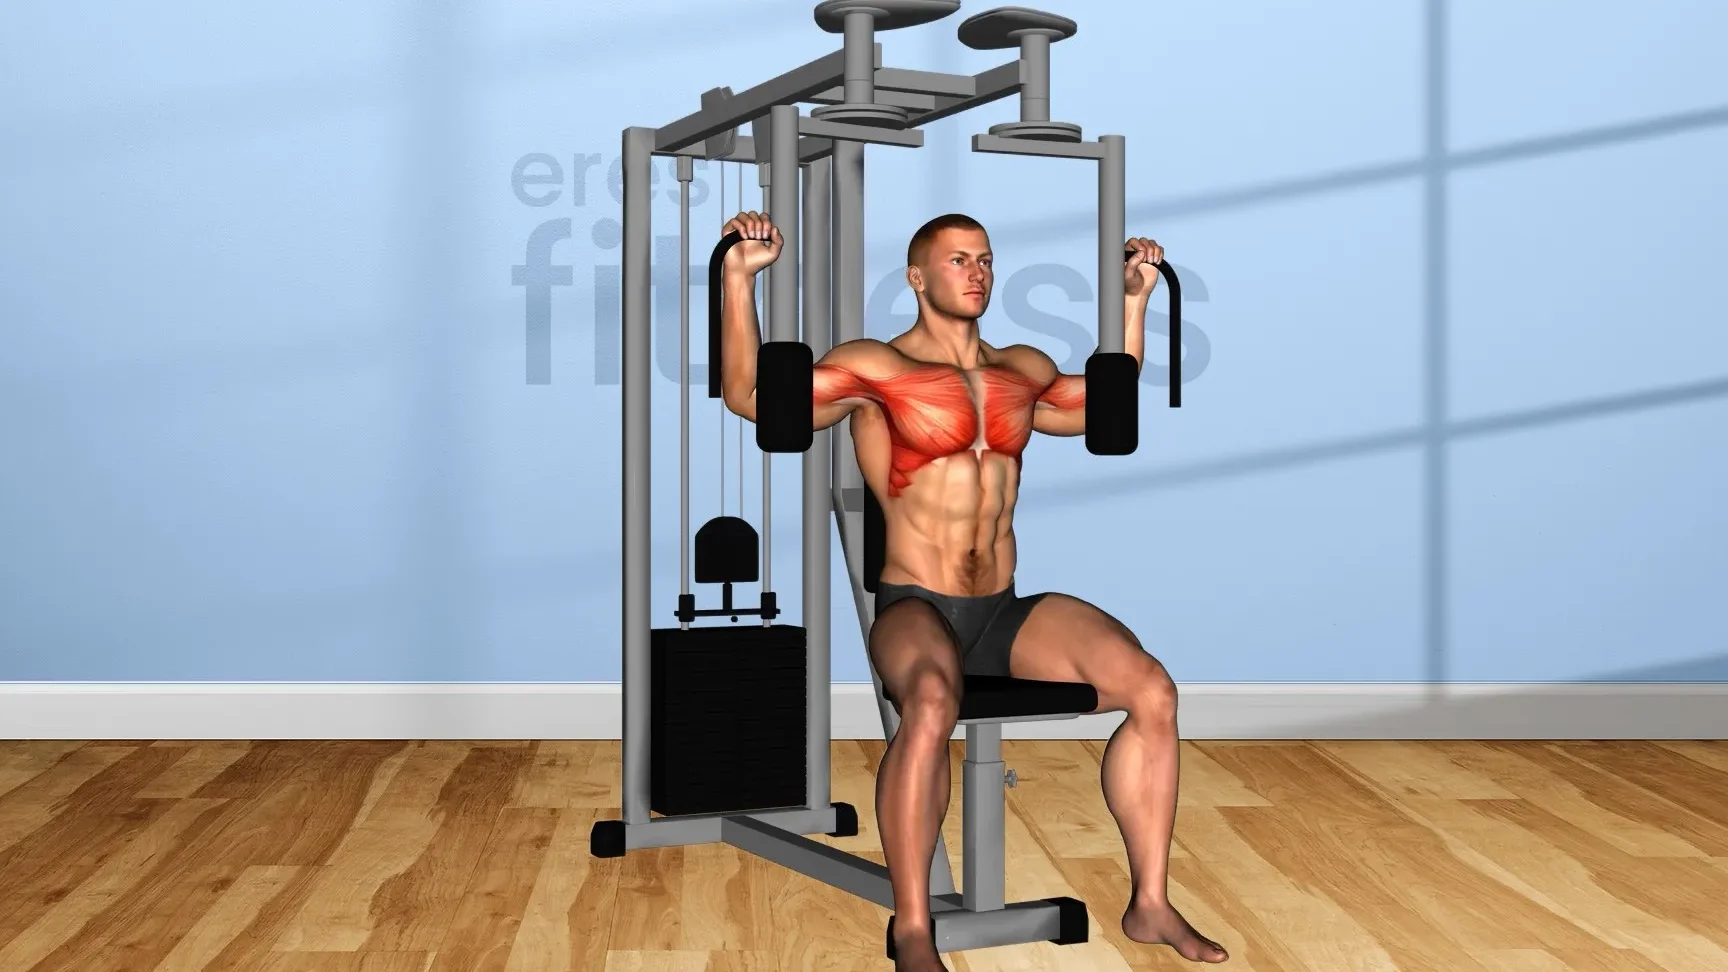 Máquinas para entrenar el pecho en el gimnasio: Mejora tu fuerza y definición.